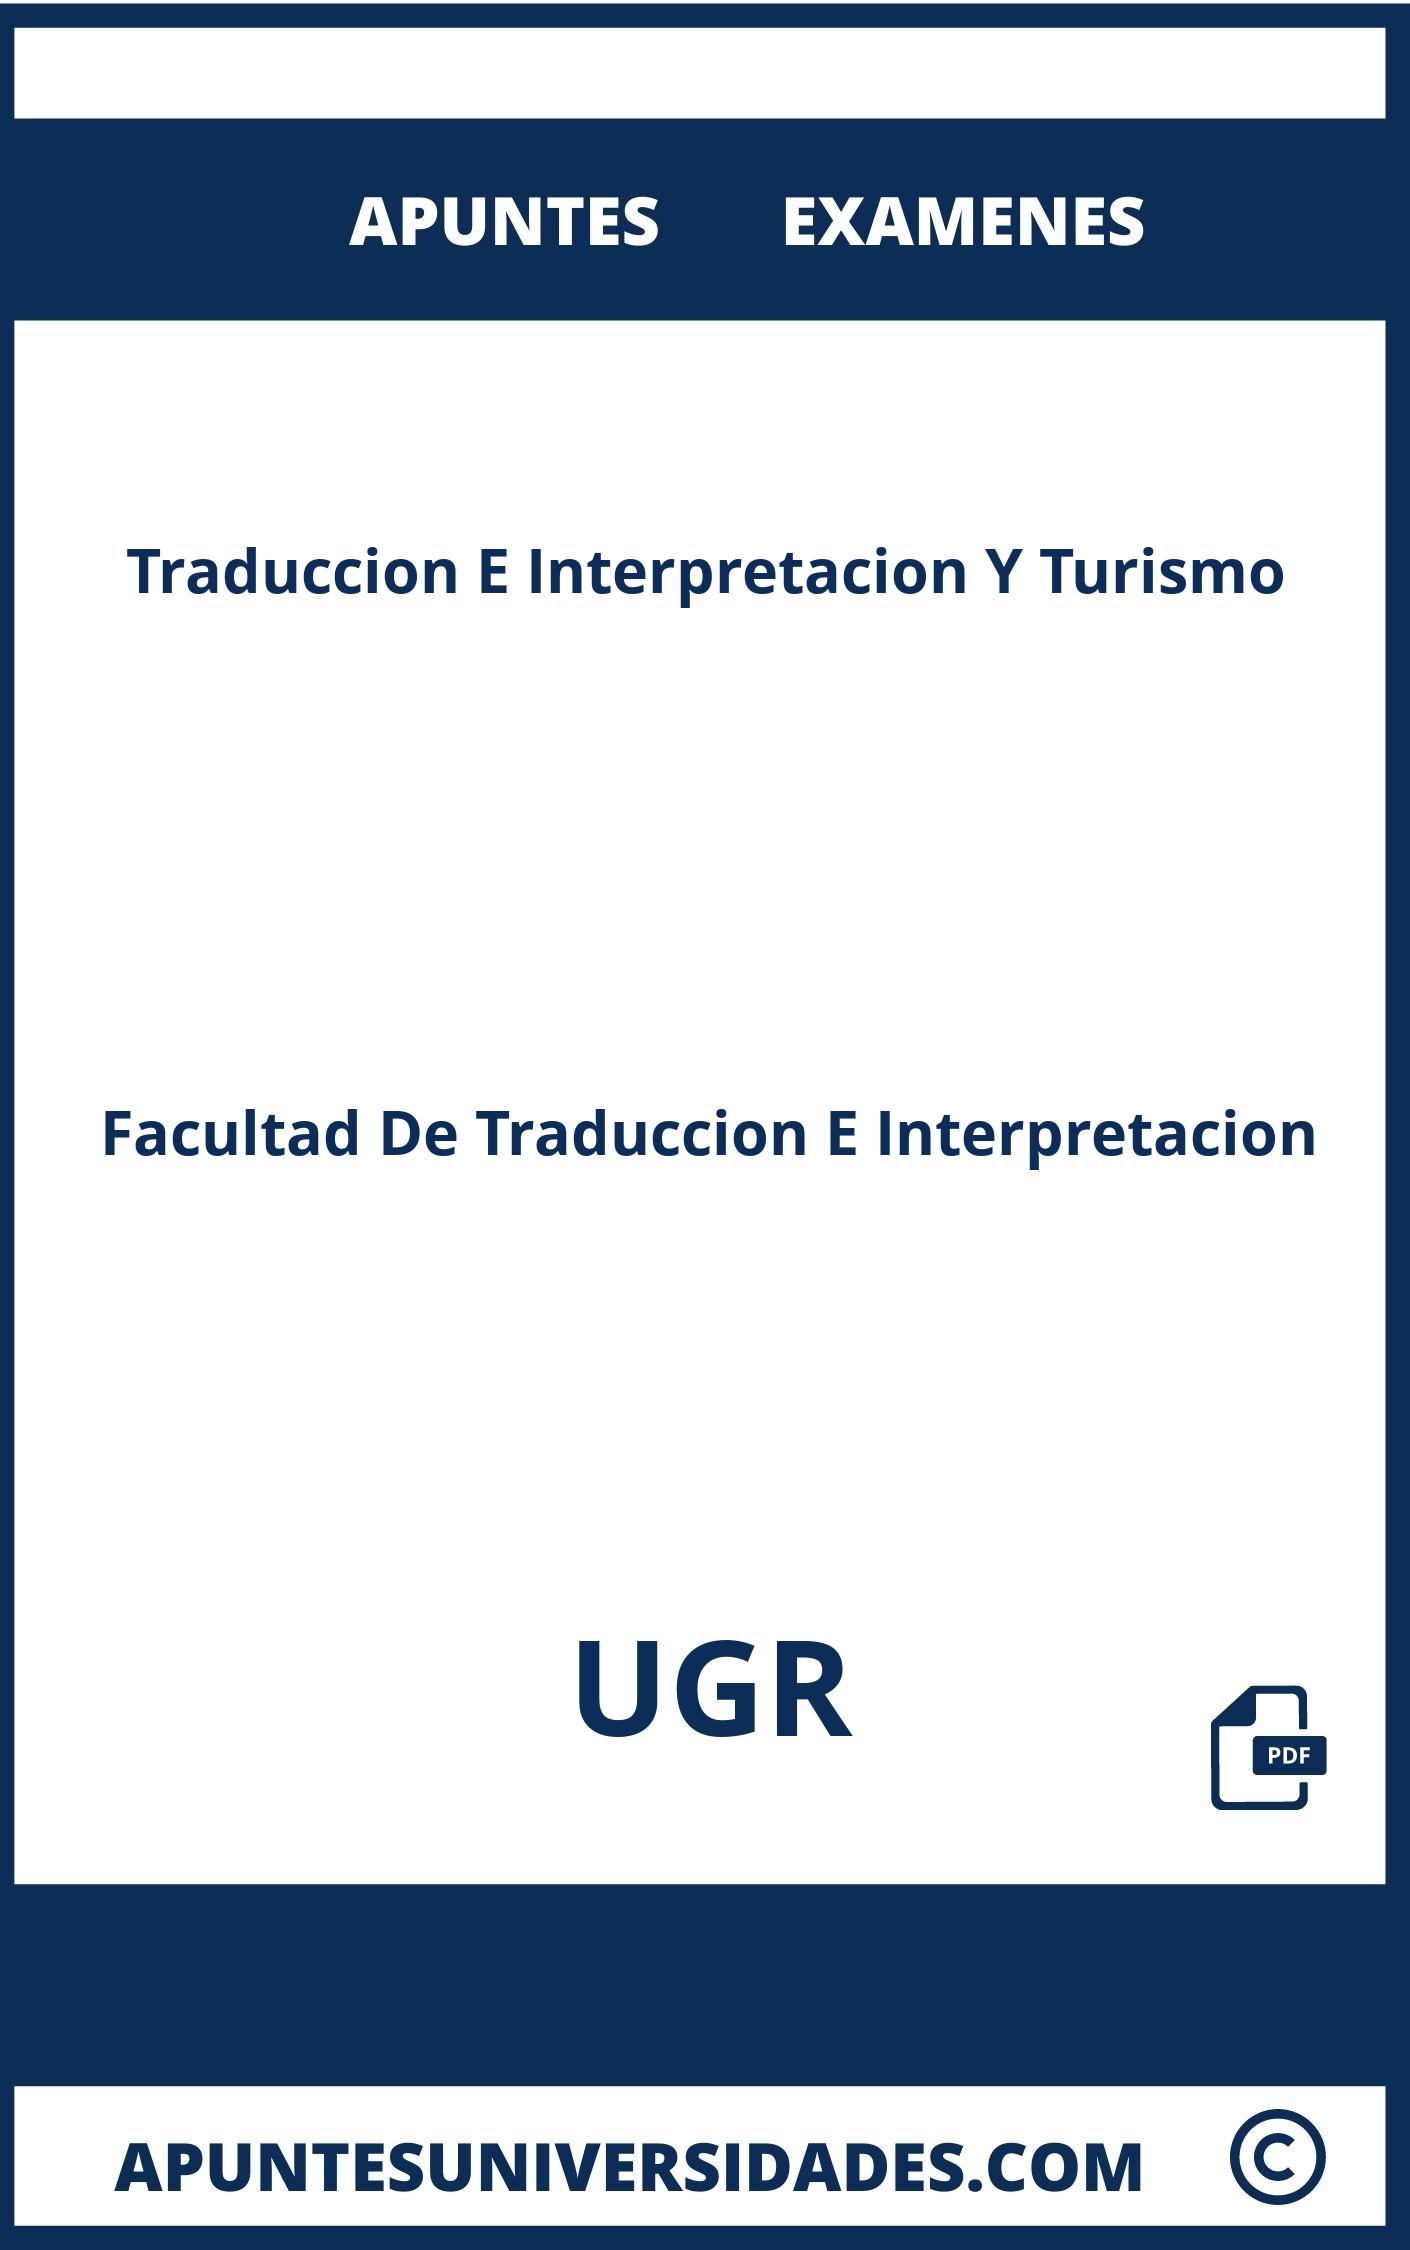 Examenes y Apuntes de Traduccion E Interpretacion Y Turismo UGR